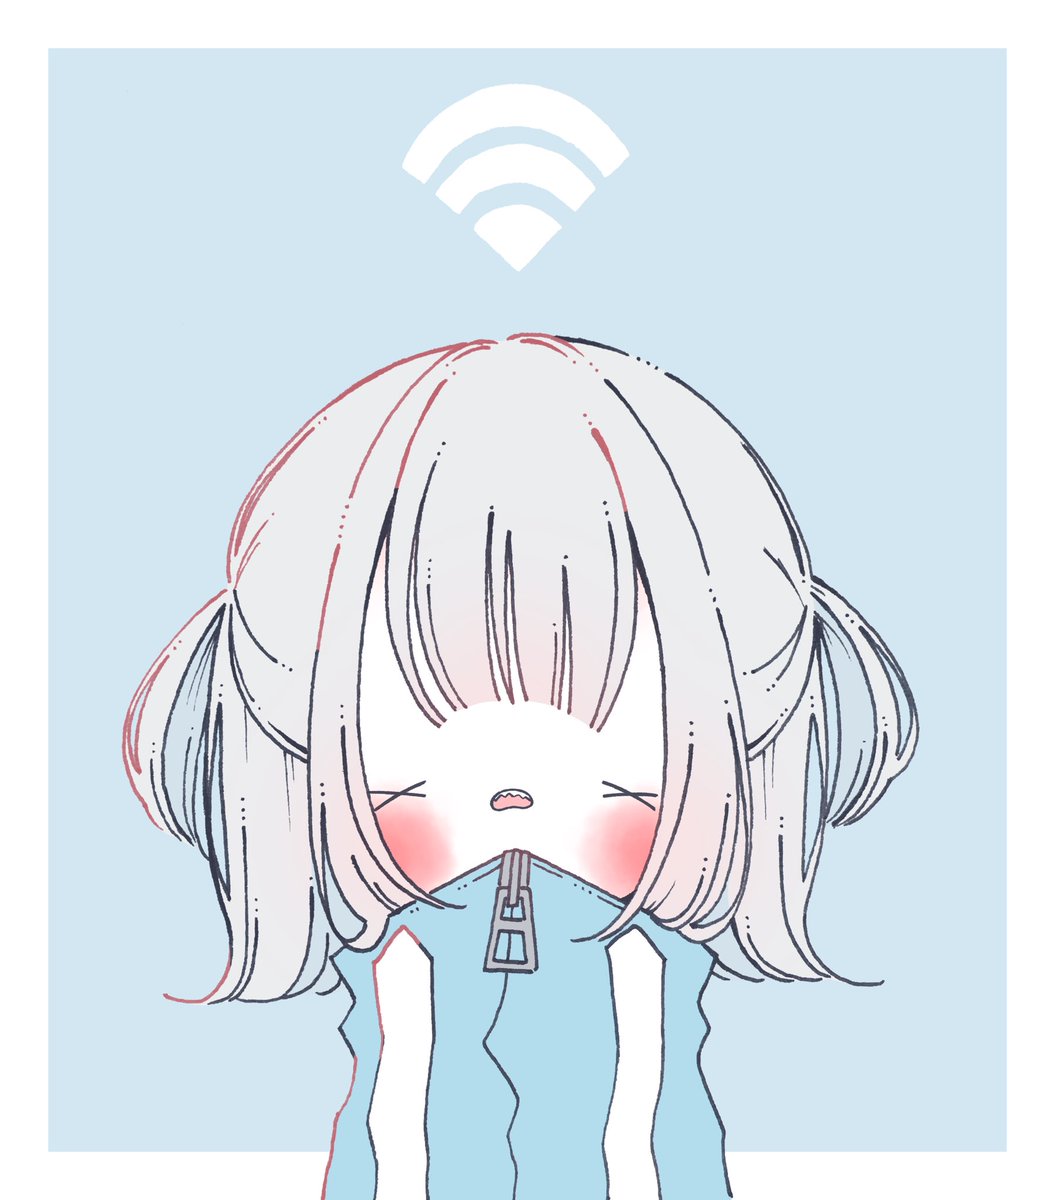 「WiFiちゃん 」|てふてふのイラスト